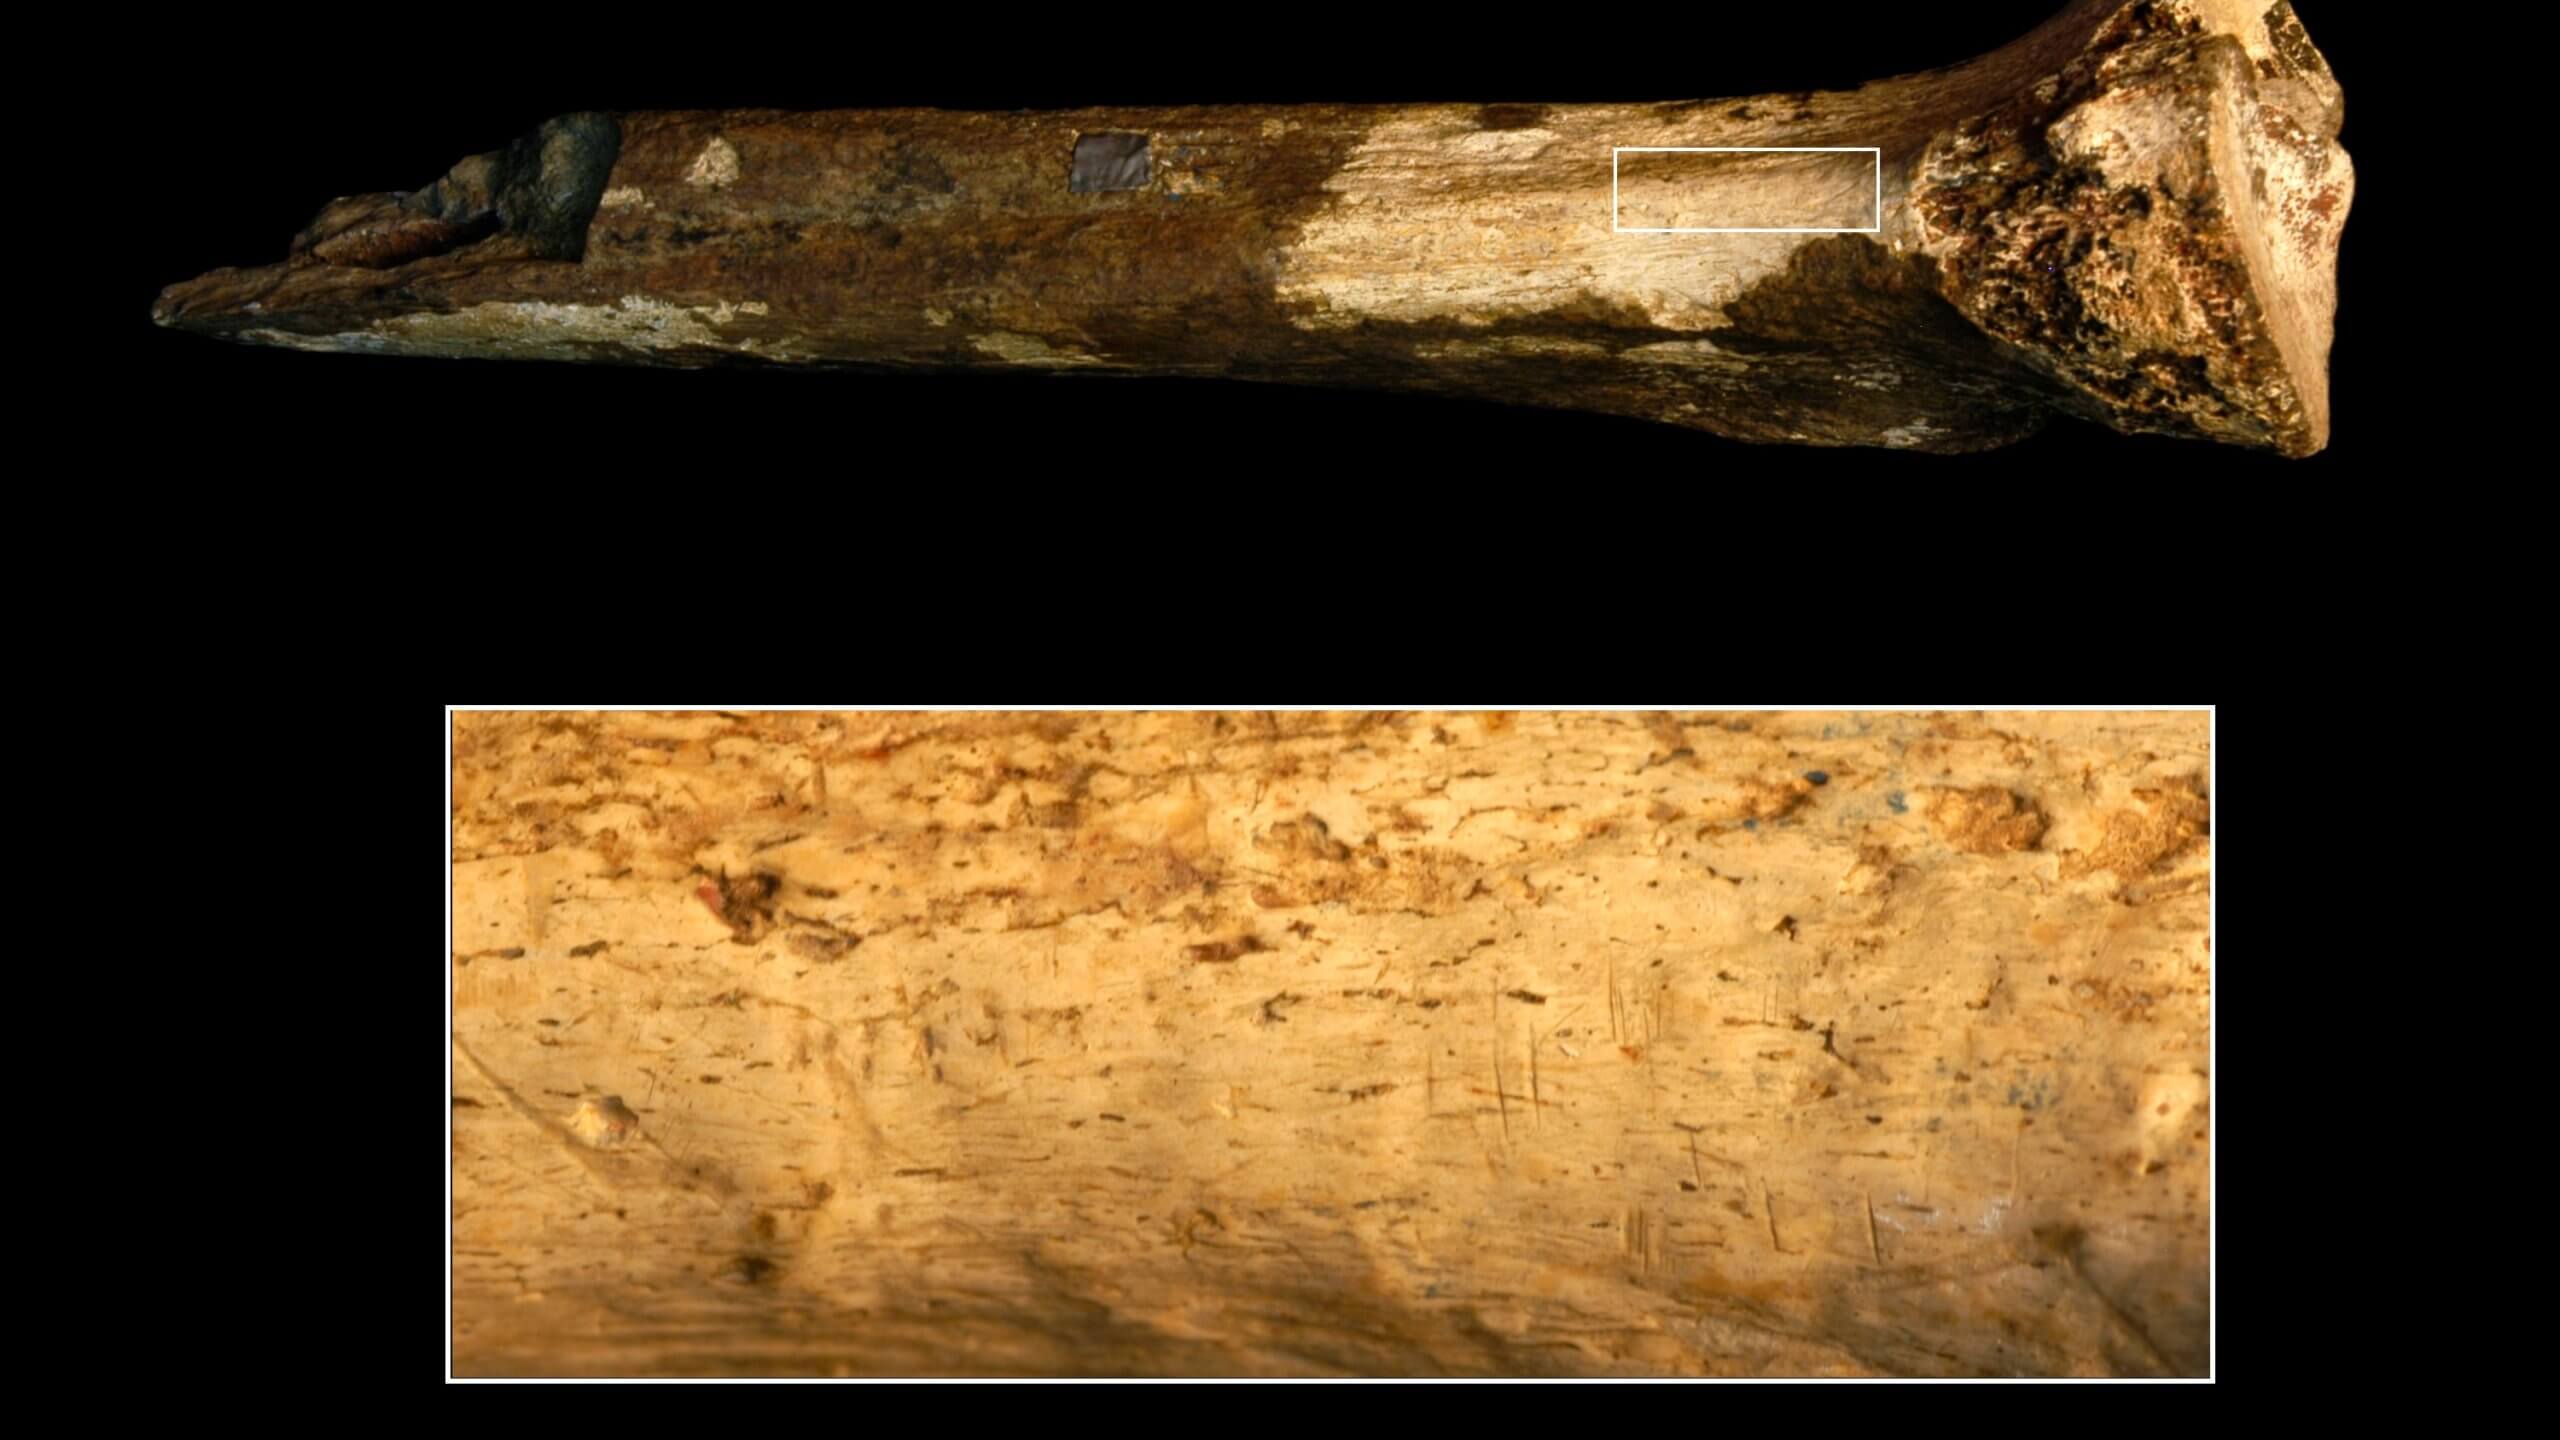 Предки человека использовали каменные орудия для разделки друг друга. Насечки на кости гоминина говорят о том, что его тушу разделывали каменными орудиями. Фото.